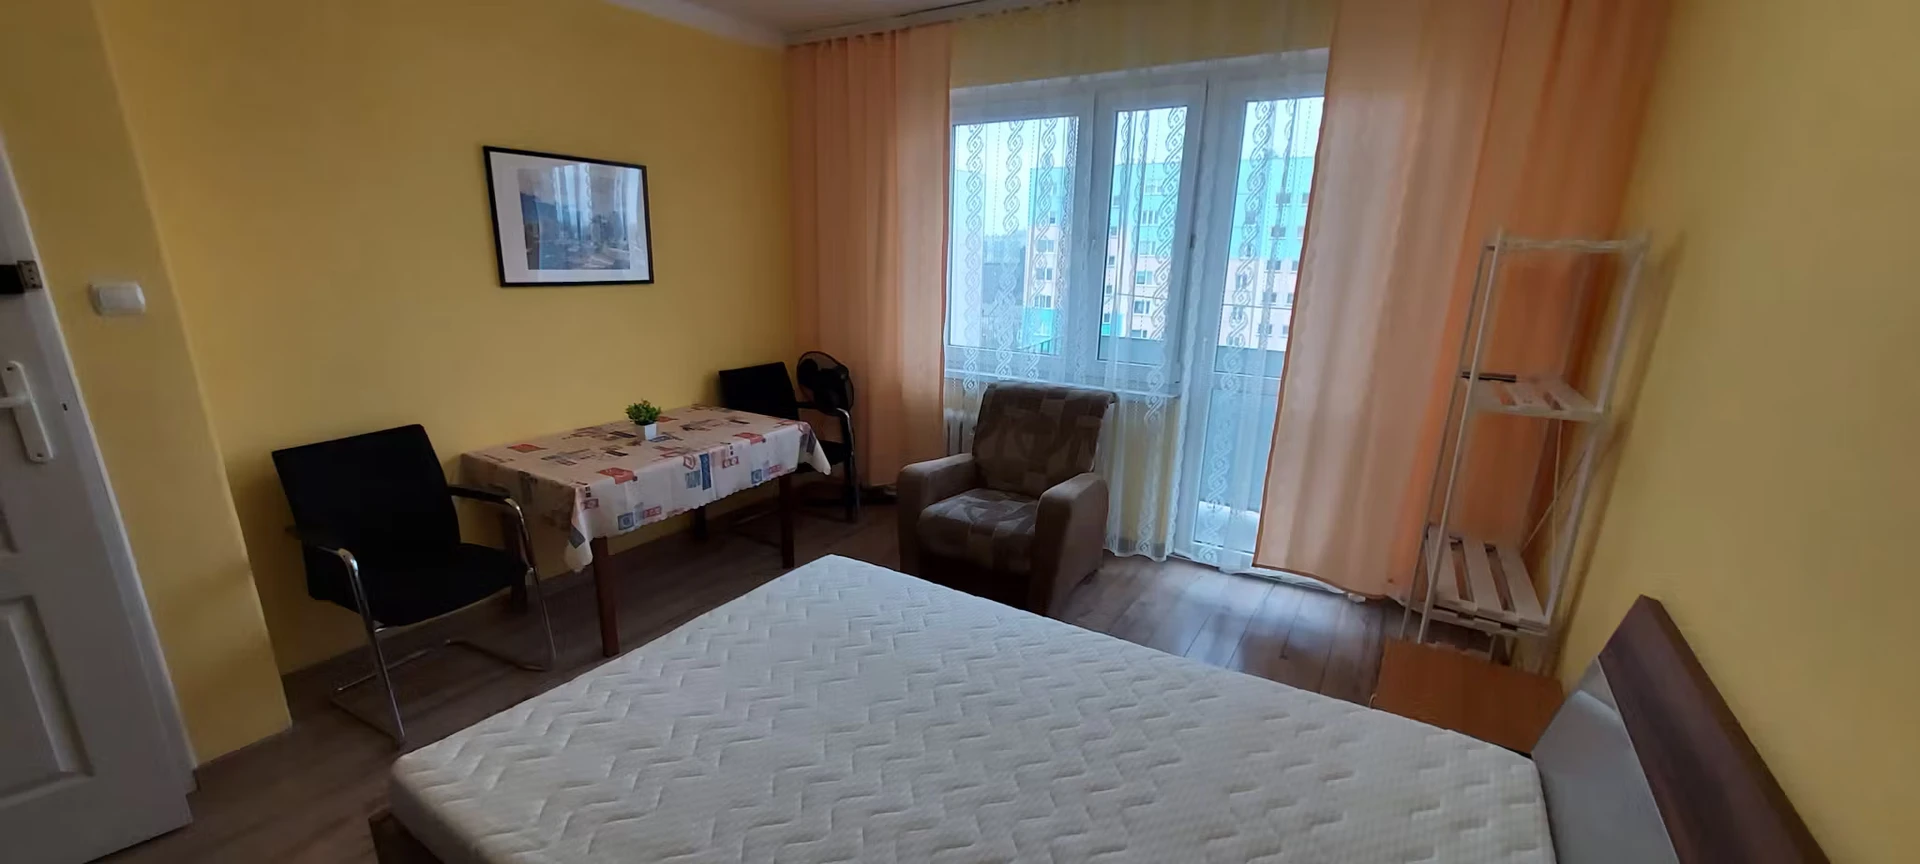 Chambre à louer avec lit double Rzeszów